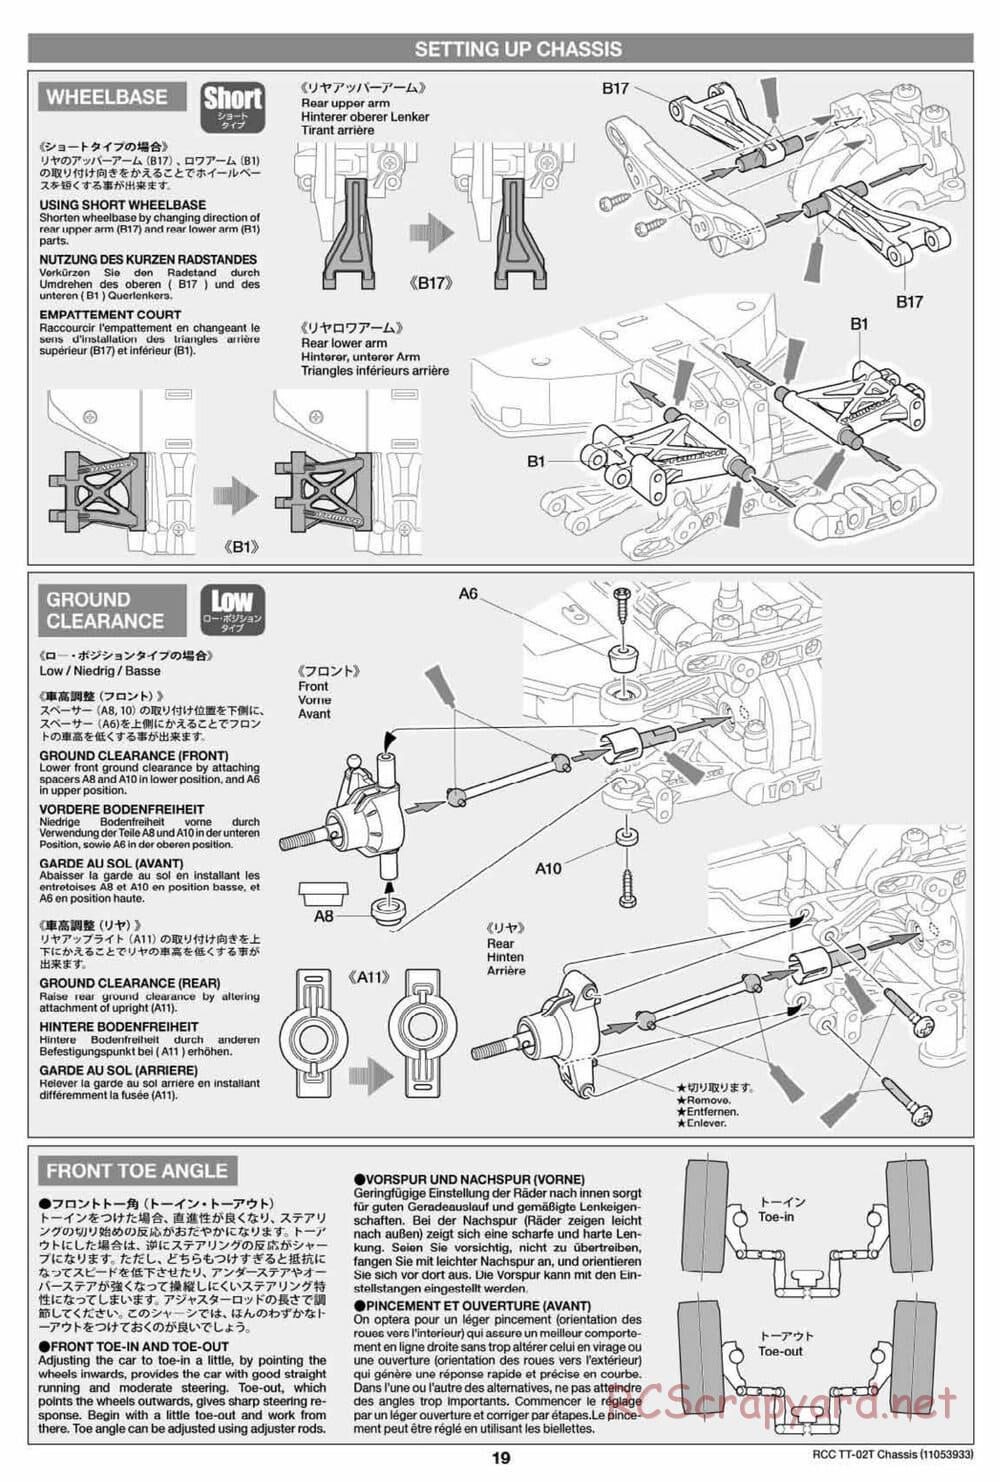 Tamiya - TT-02T Chassis - Manual - Page 20